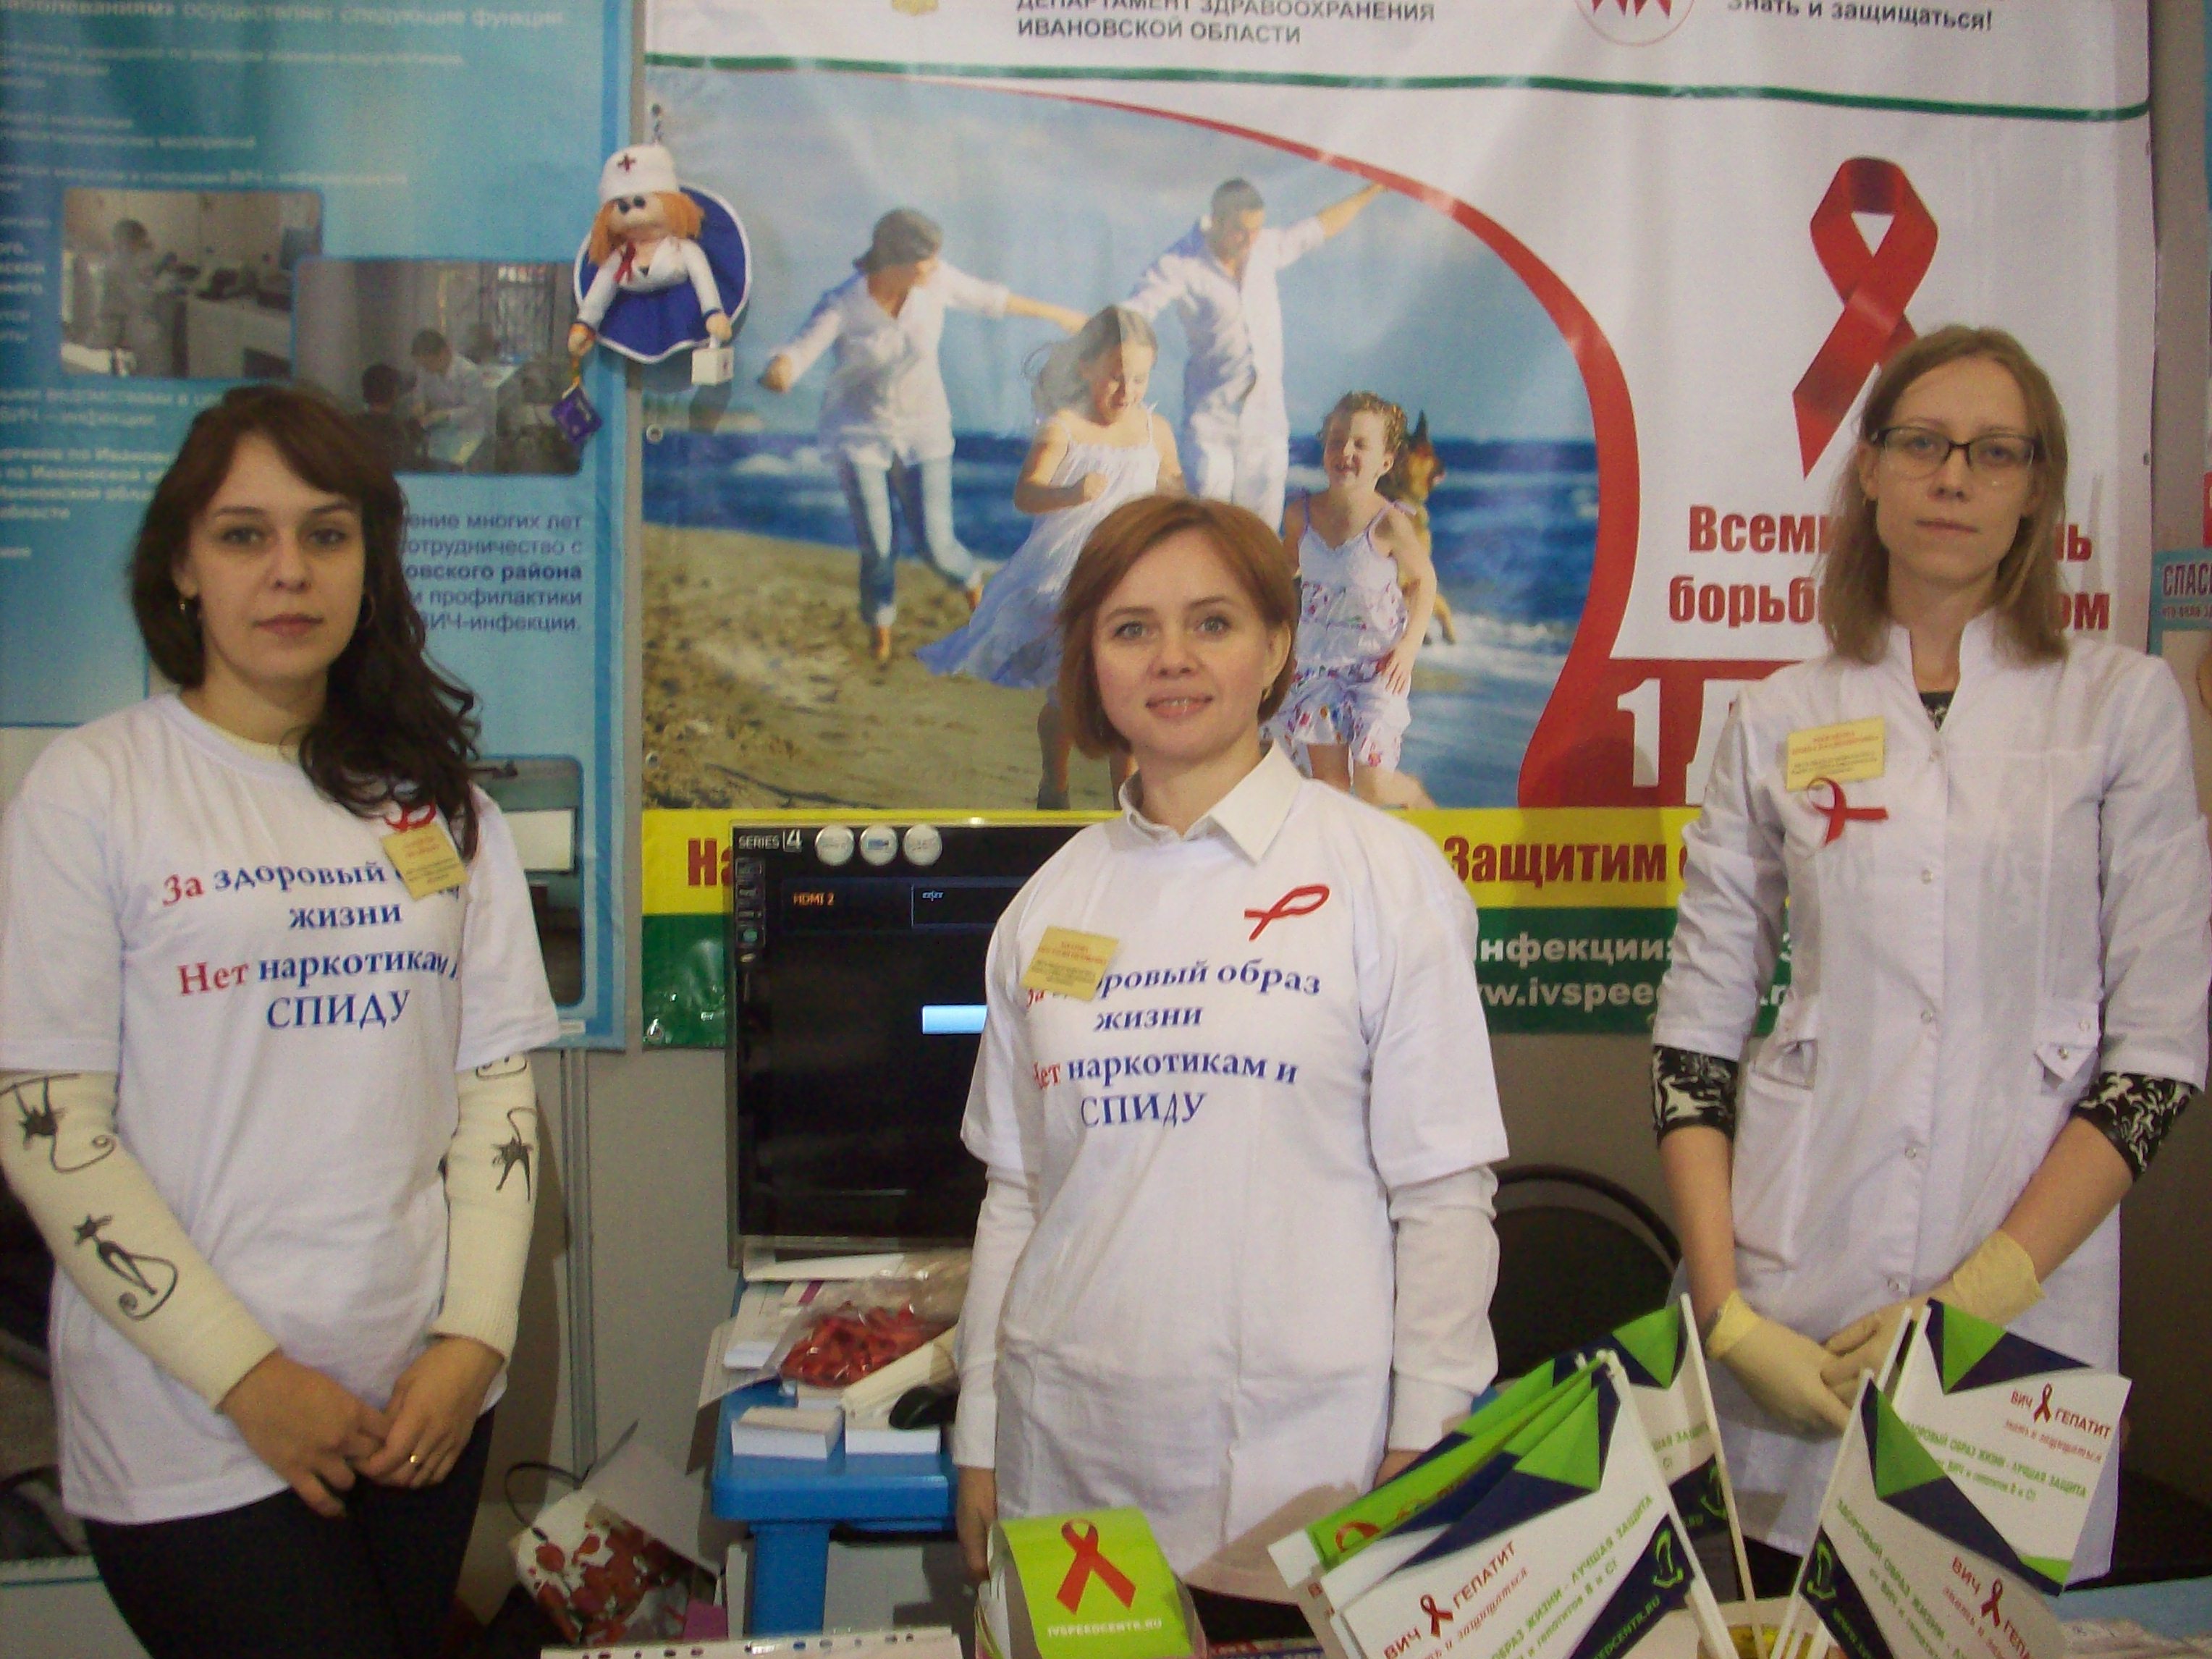 Итоги проекта по профилактике ВИЧ-инфекции подводят в Ивановской области